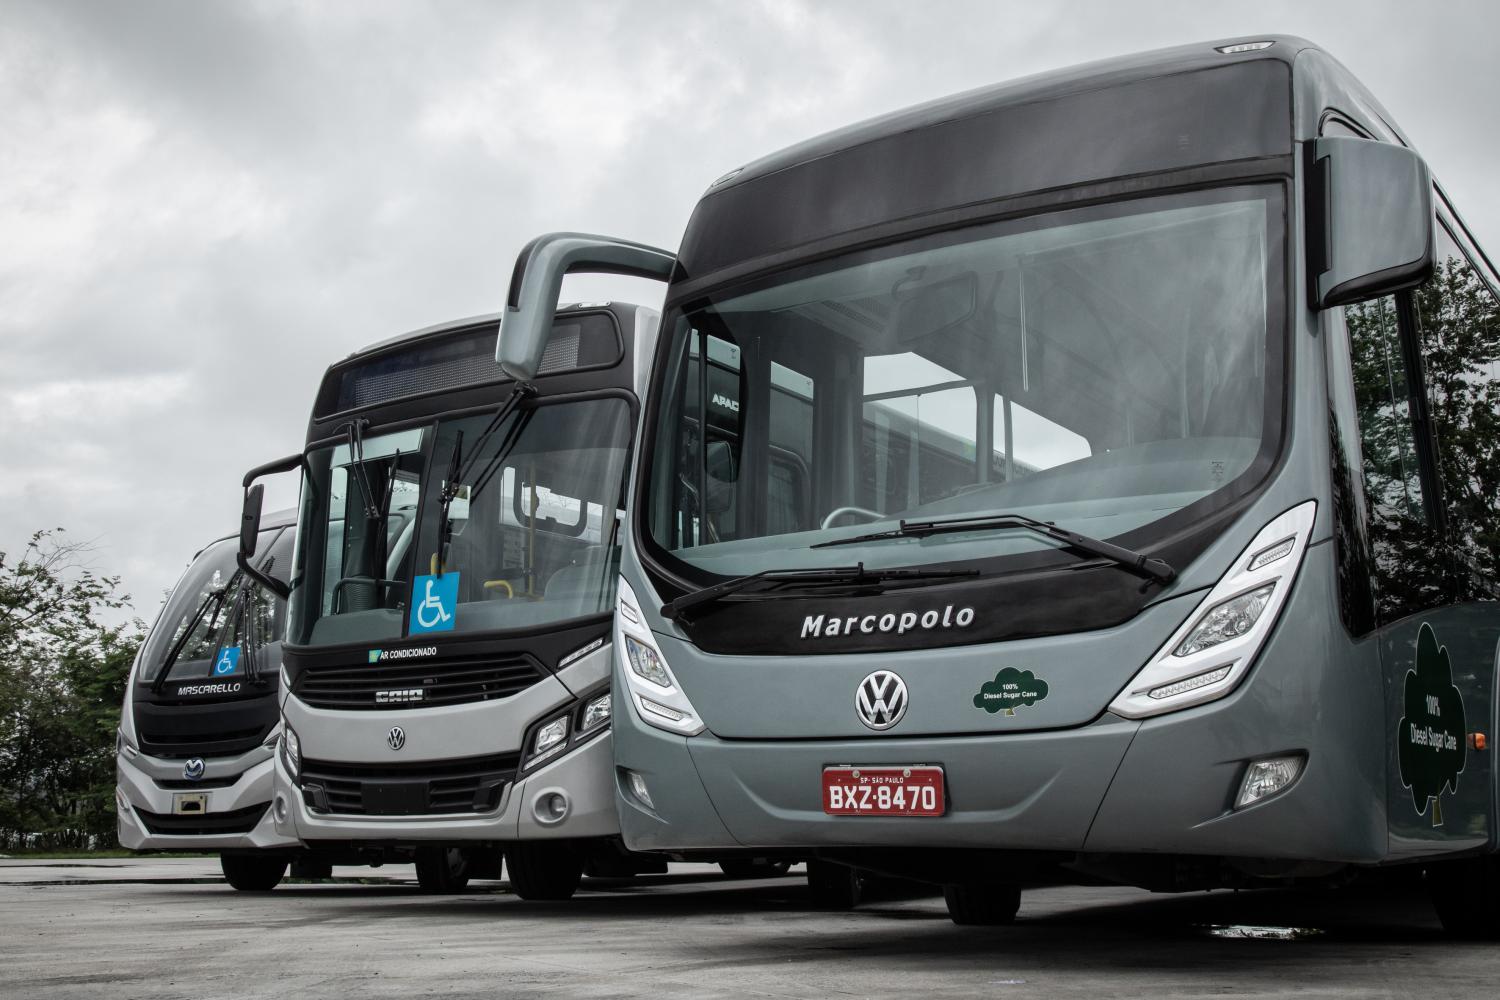 VW Caminhões e Ônibus alcanza el hito de 10.000 autobuses inspeccionados en colaboración con carroceros